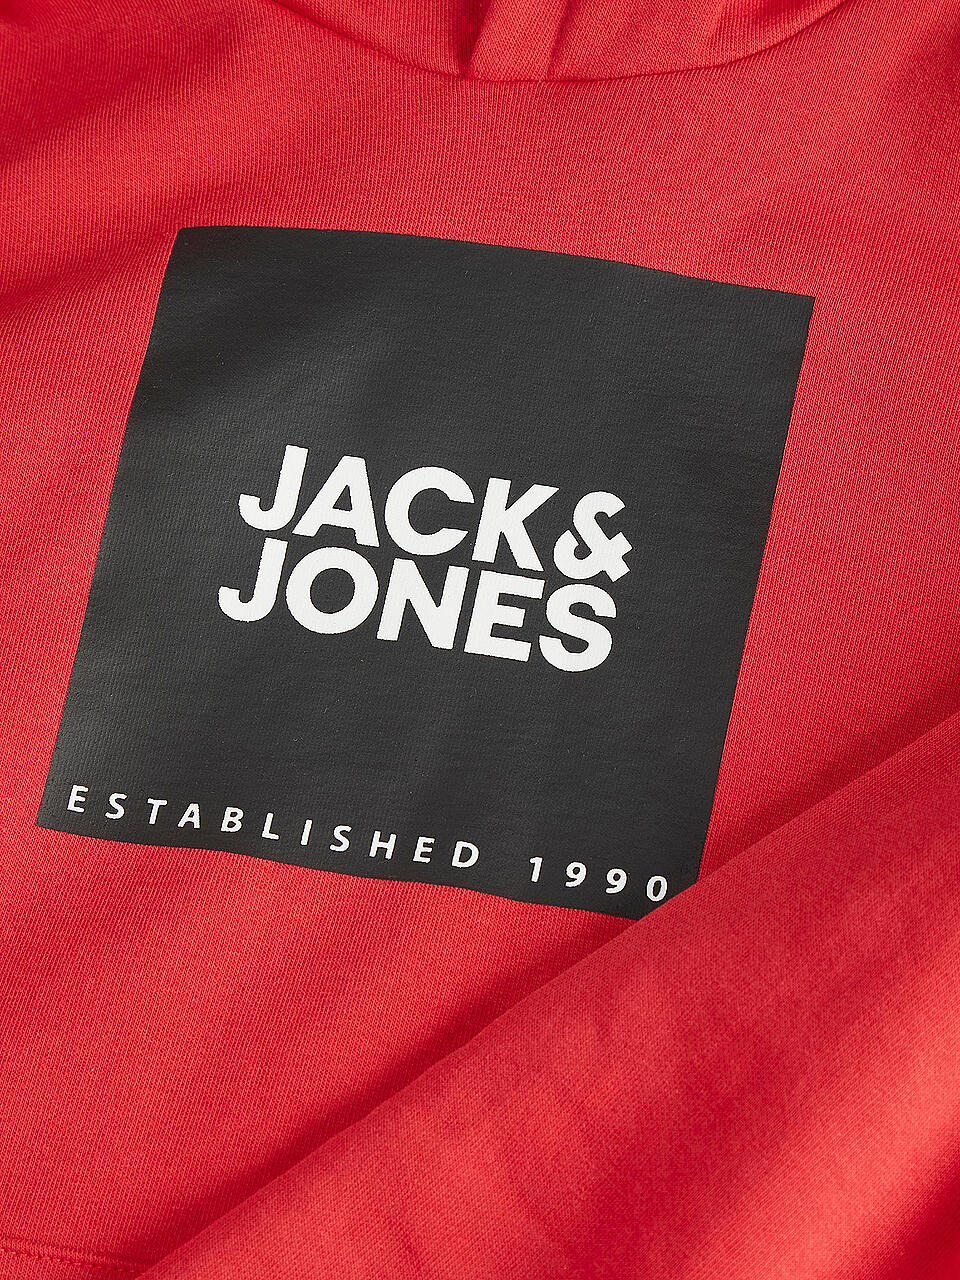 JACK & JONES | Jungen Kapuzensweater - Hoodie JJLOCK  | rot